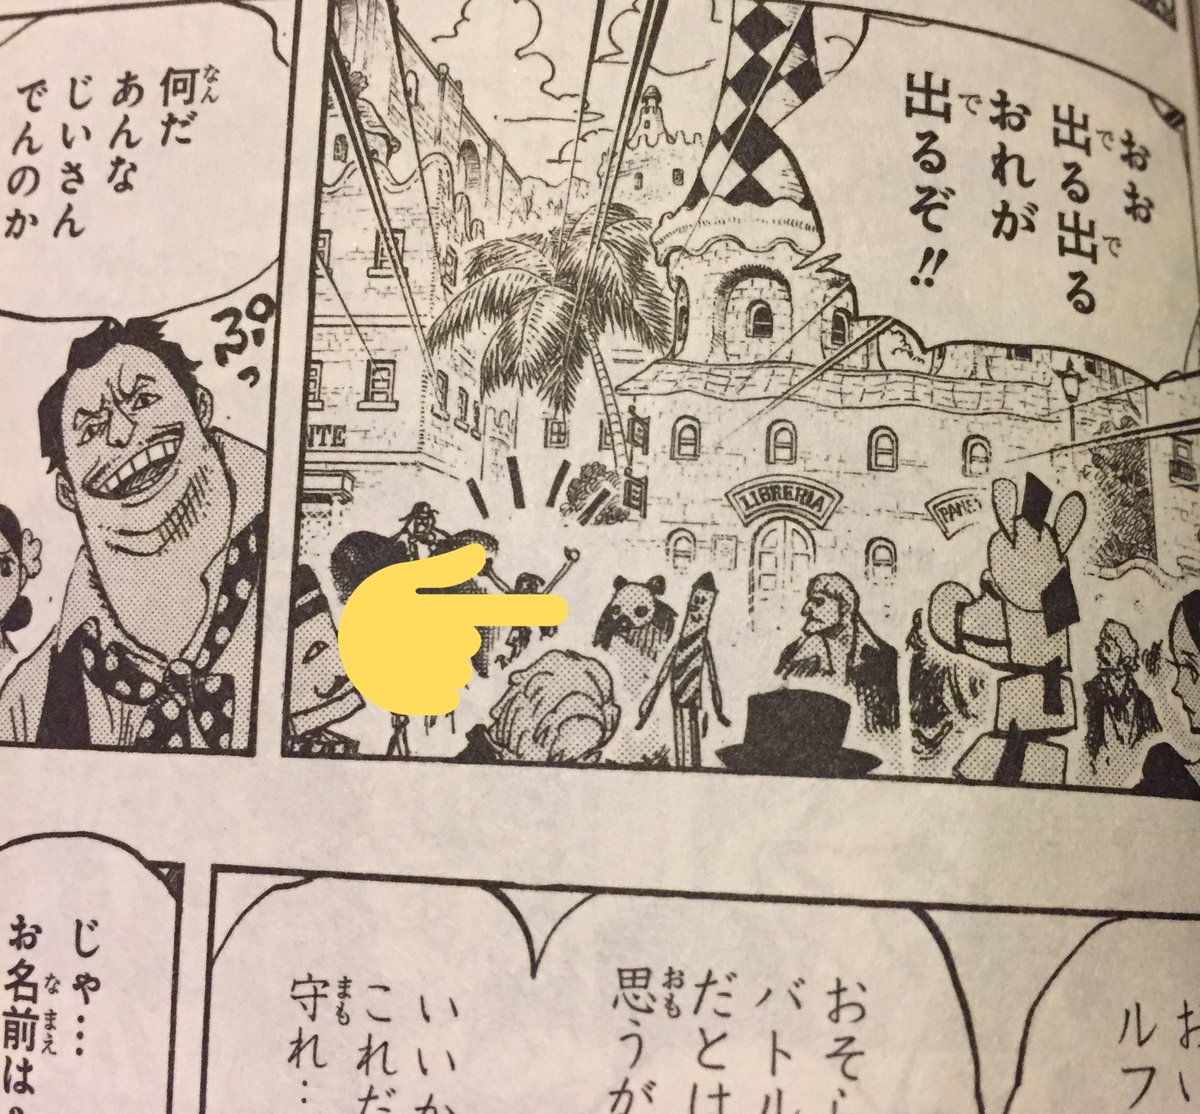 One Pieceが大好きな神木 スーパーカミキカンデ ドレスローザで登場したドスコイパンダ この時はおもちゃ型 のドスコイパンダと思ってたけど 今思えばホンモノだったのかな